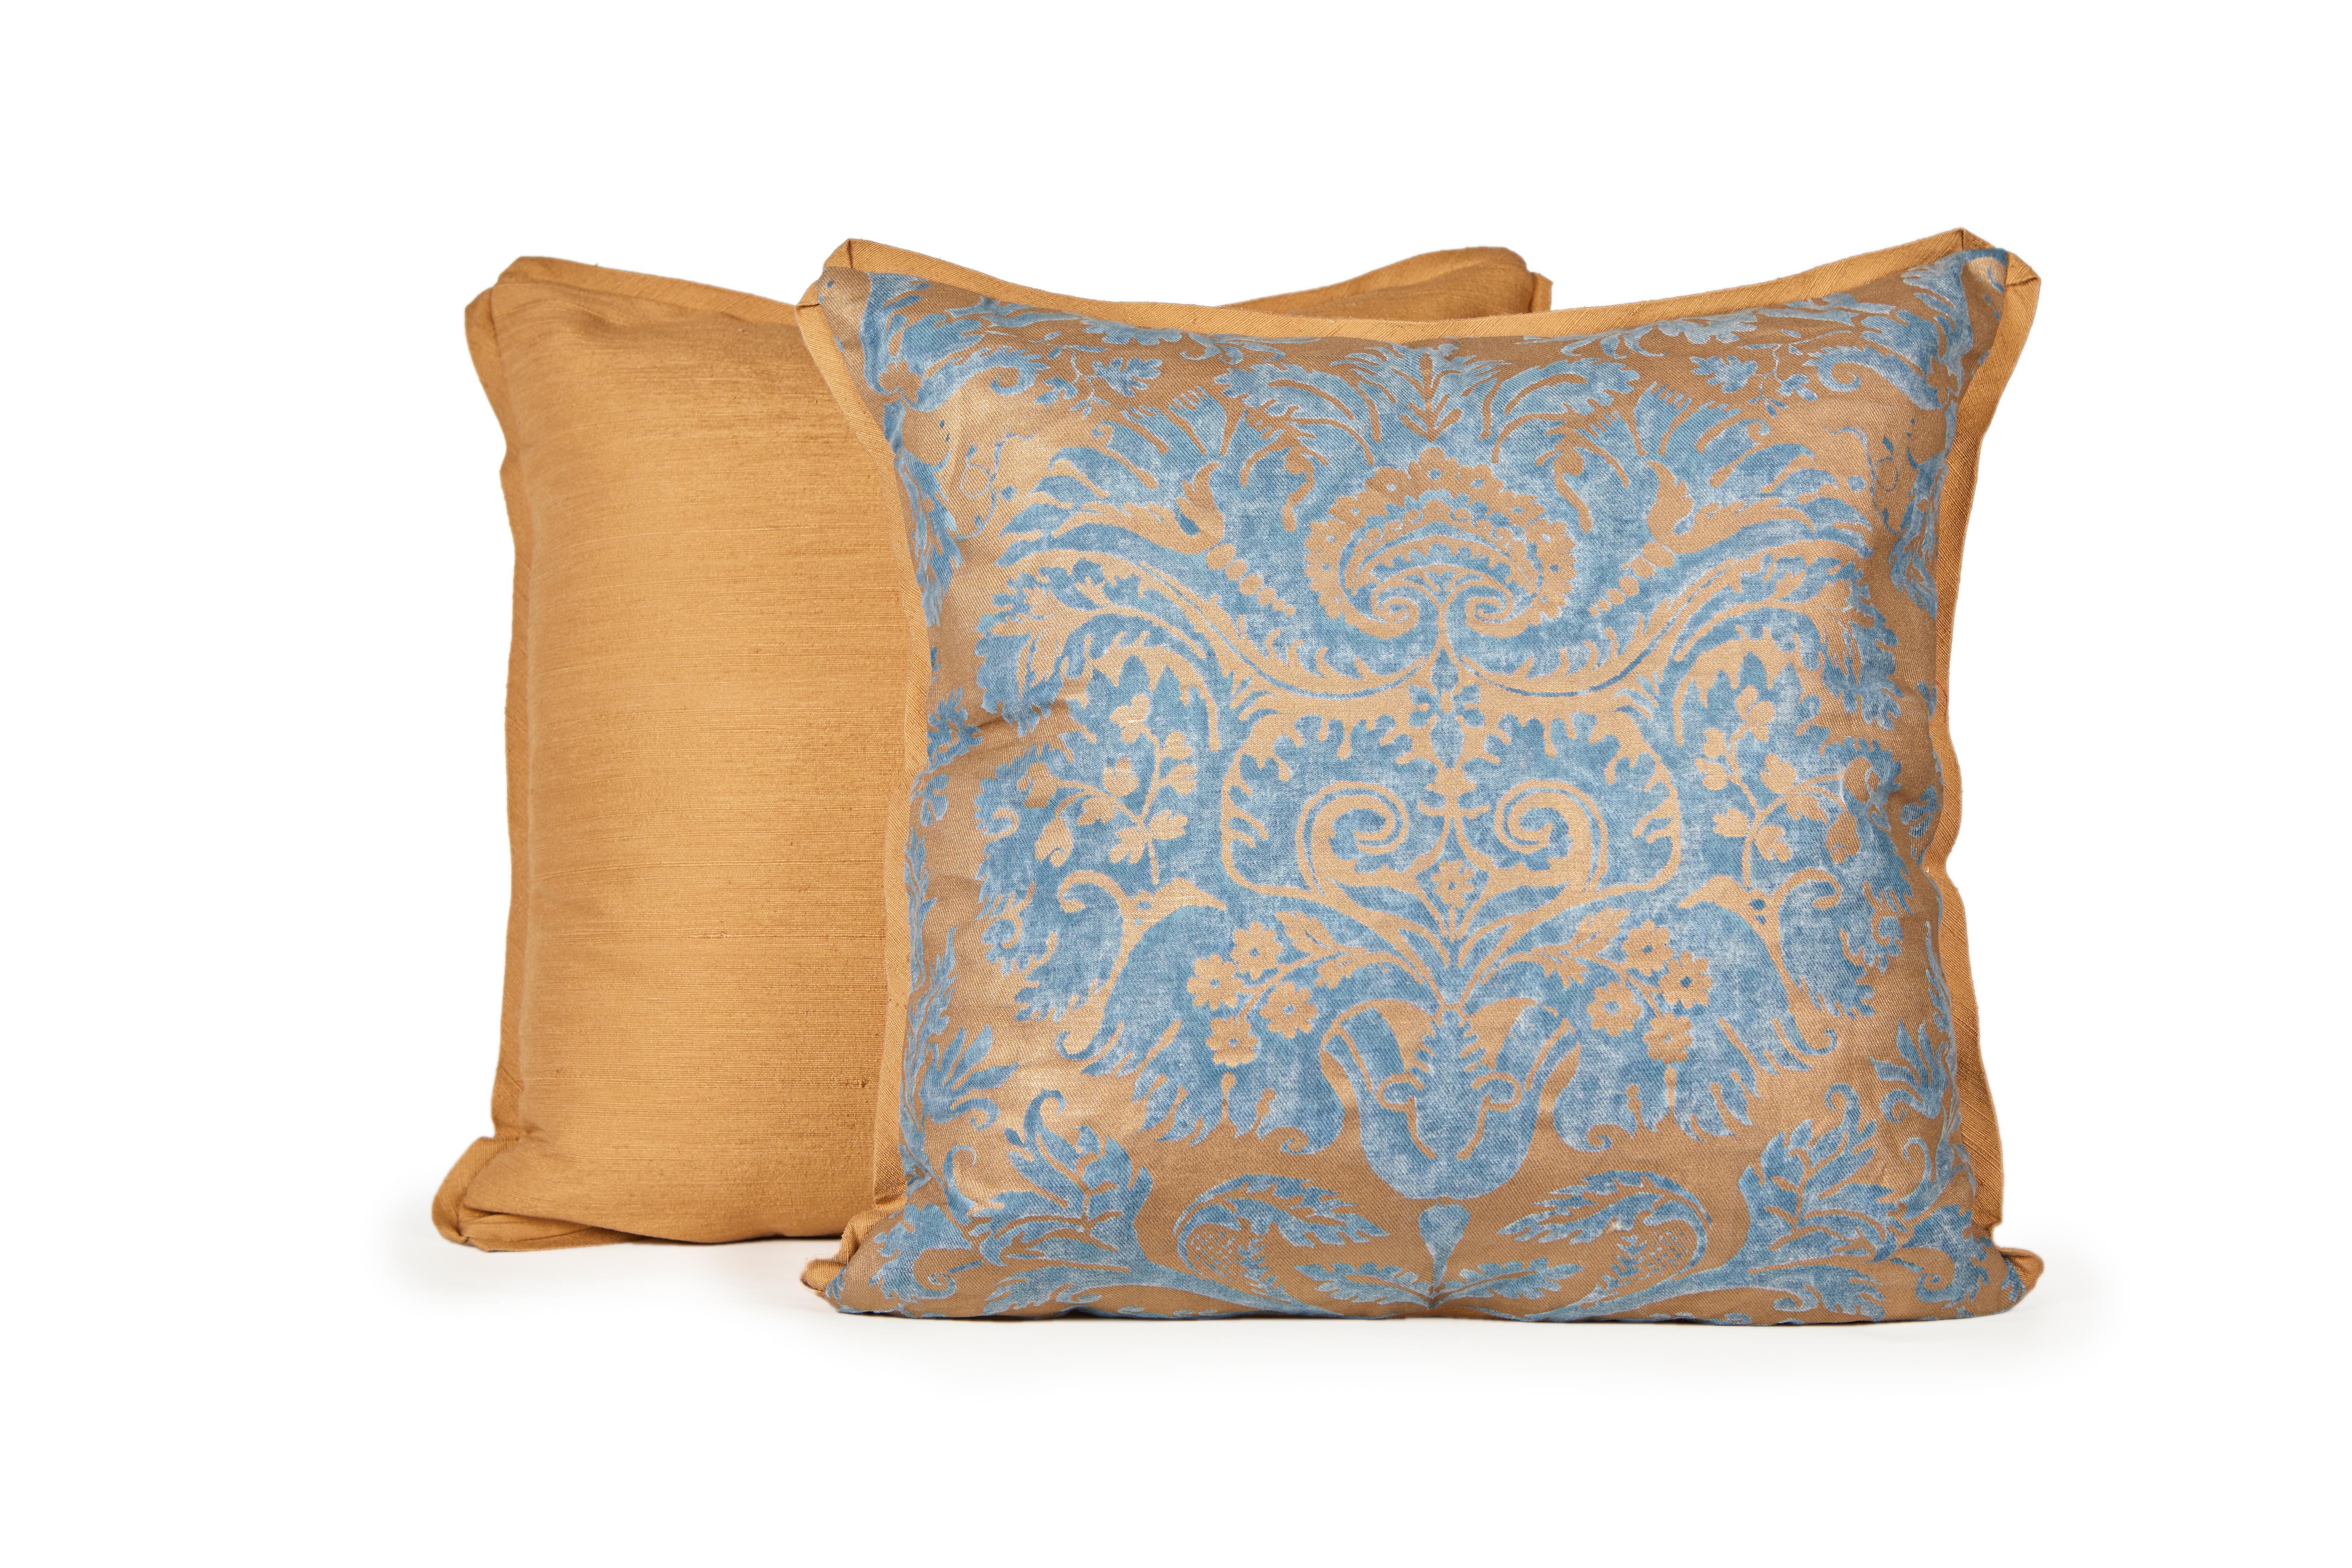 Ein Paar Fortuny-Stoffkissen mit Demedici-Muster, silbrig-goldener und blauer Farbgebung, schräger Seidenrand und goldene Seidenmischung auf der Rückseite. Das Muster, ein italienisches Design aus dem 17. Jahrhundert, ist nach der berühmten